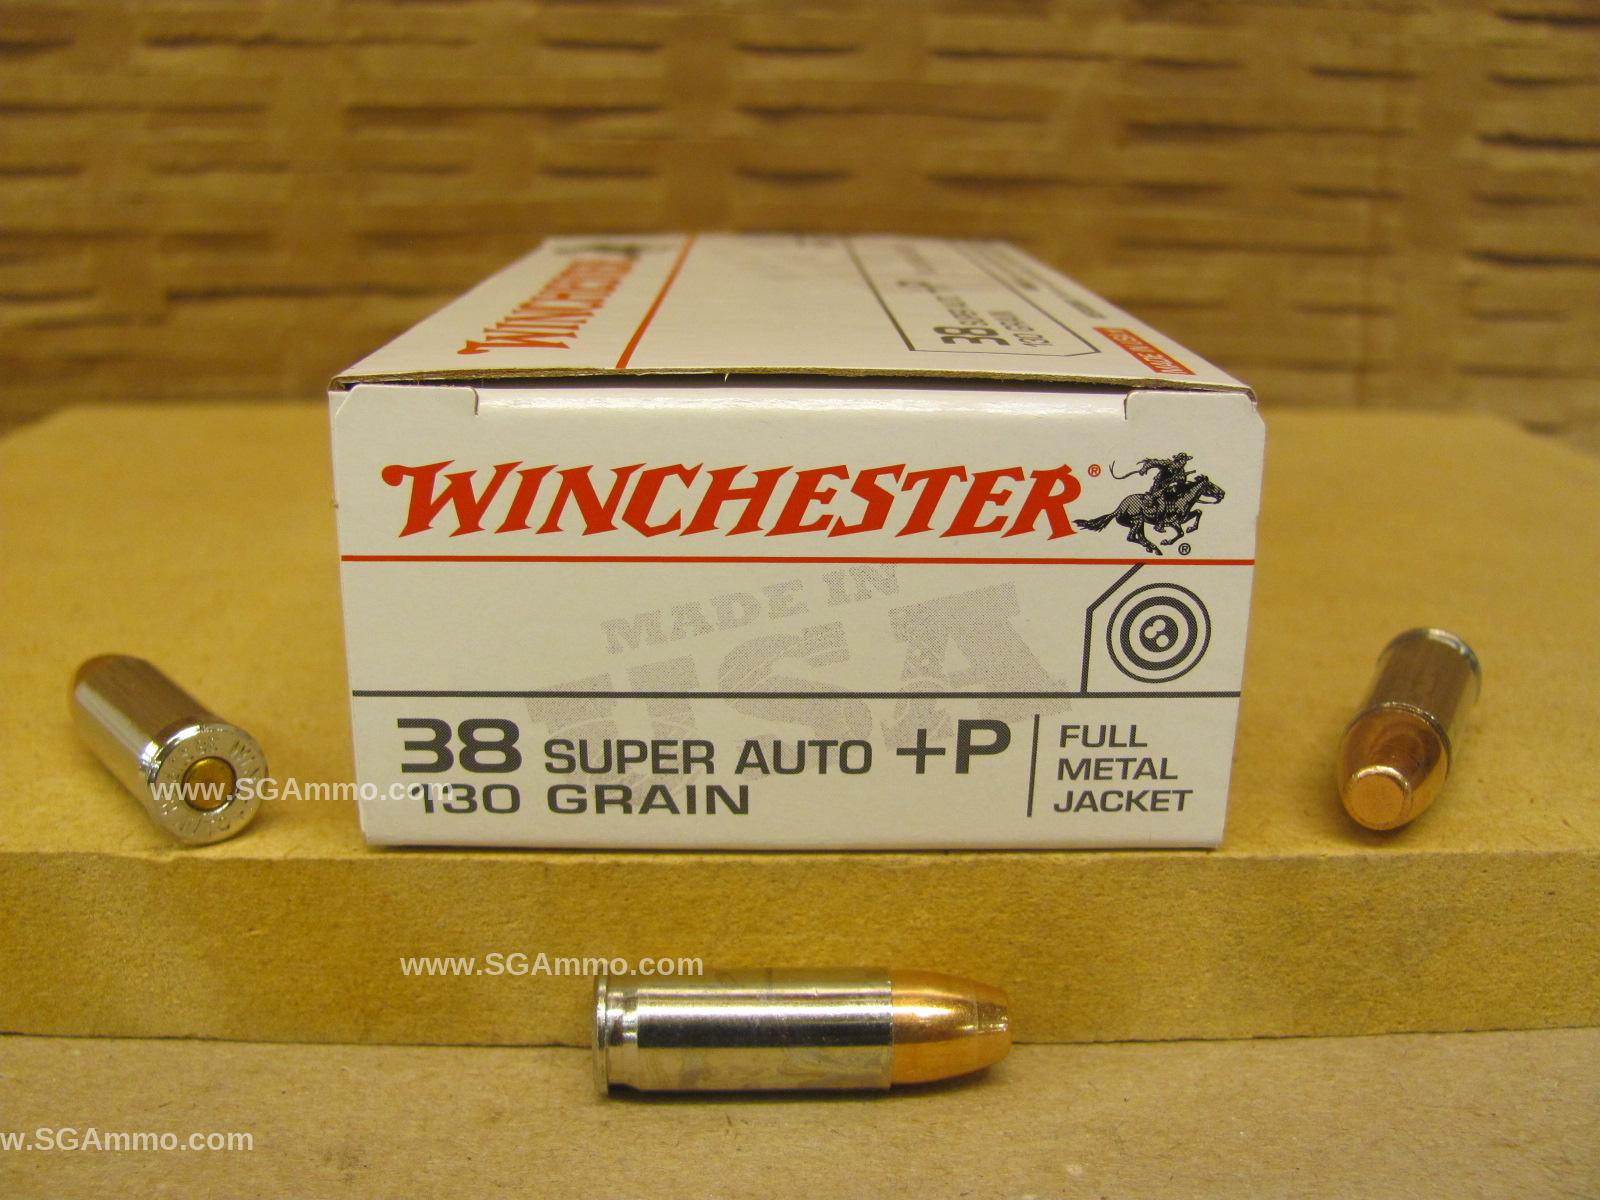 50 Round Box - 38 Super Auto +P Winchester 130 Grain FMJ Ammo - Q4205 - Read Description Warning